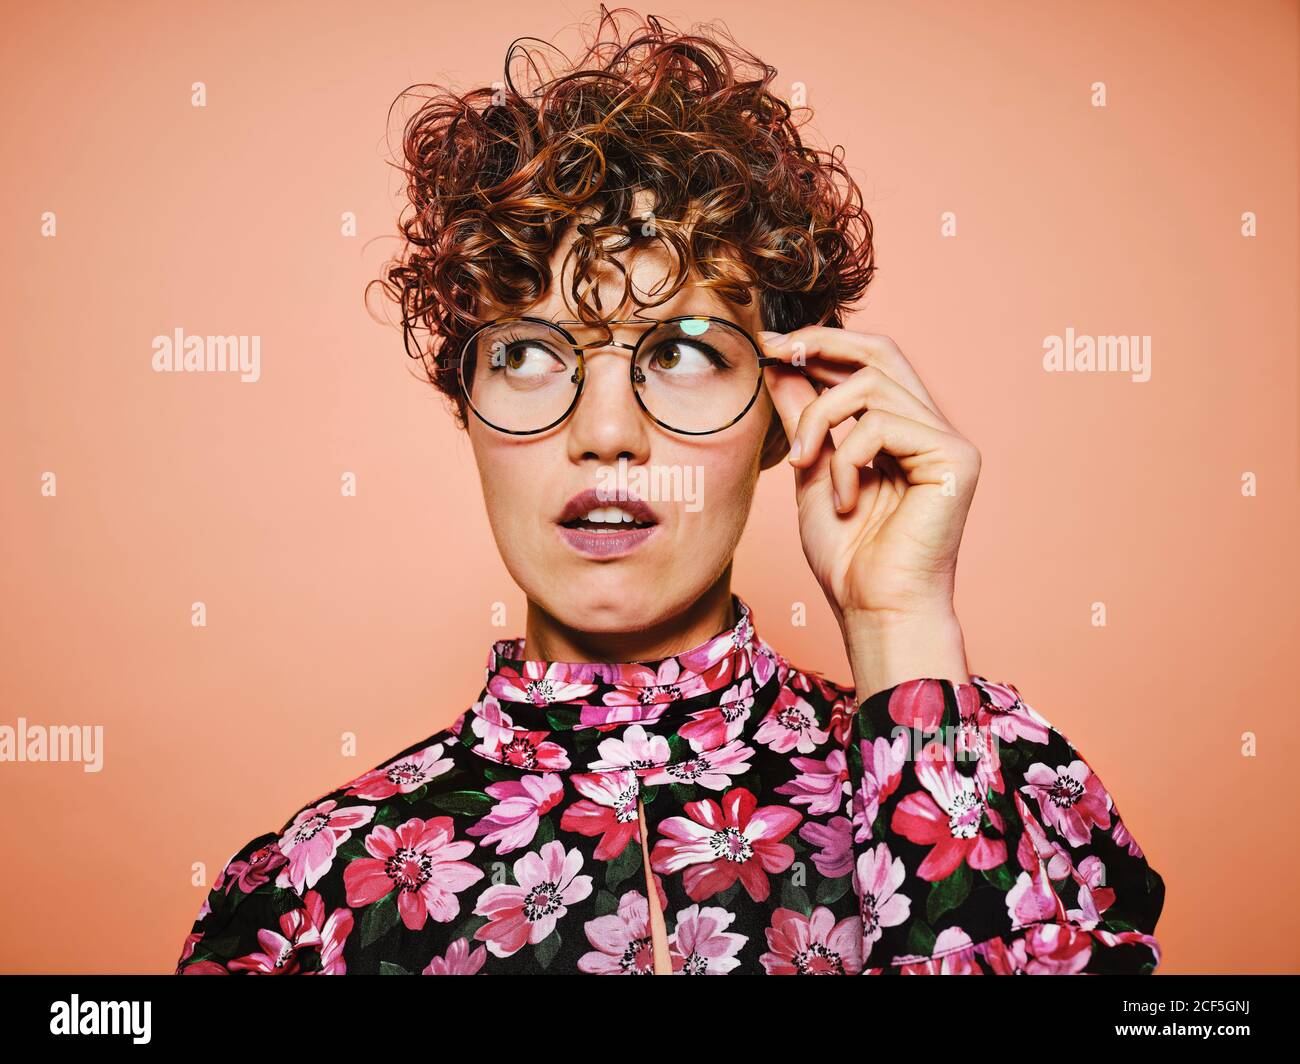 Nachdenklich zweifelhaft schöne lockige behaarte Weibchen in trendigen Brillen und Stylische, farbenfrohe Bluse mit floralem Ornament, das gegen Rosa abblickt Hintergrund Stockfoto